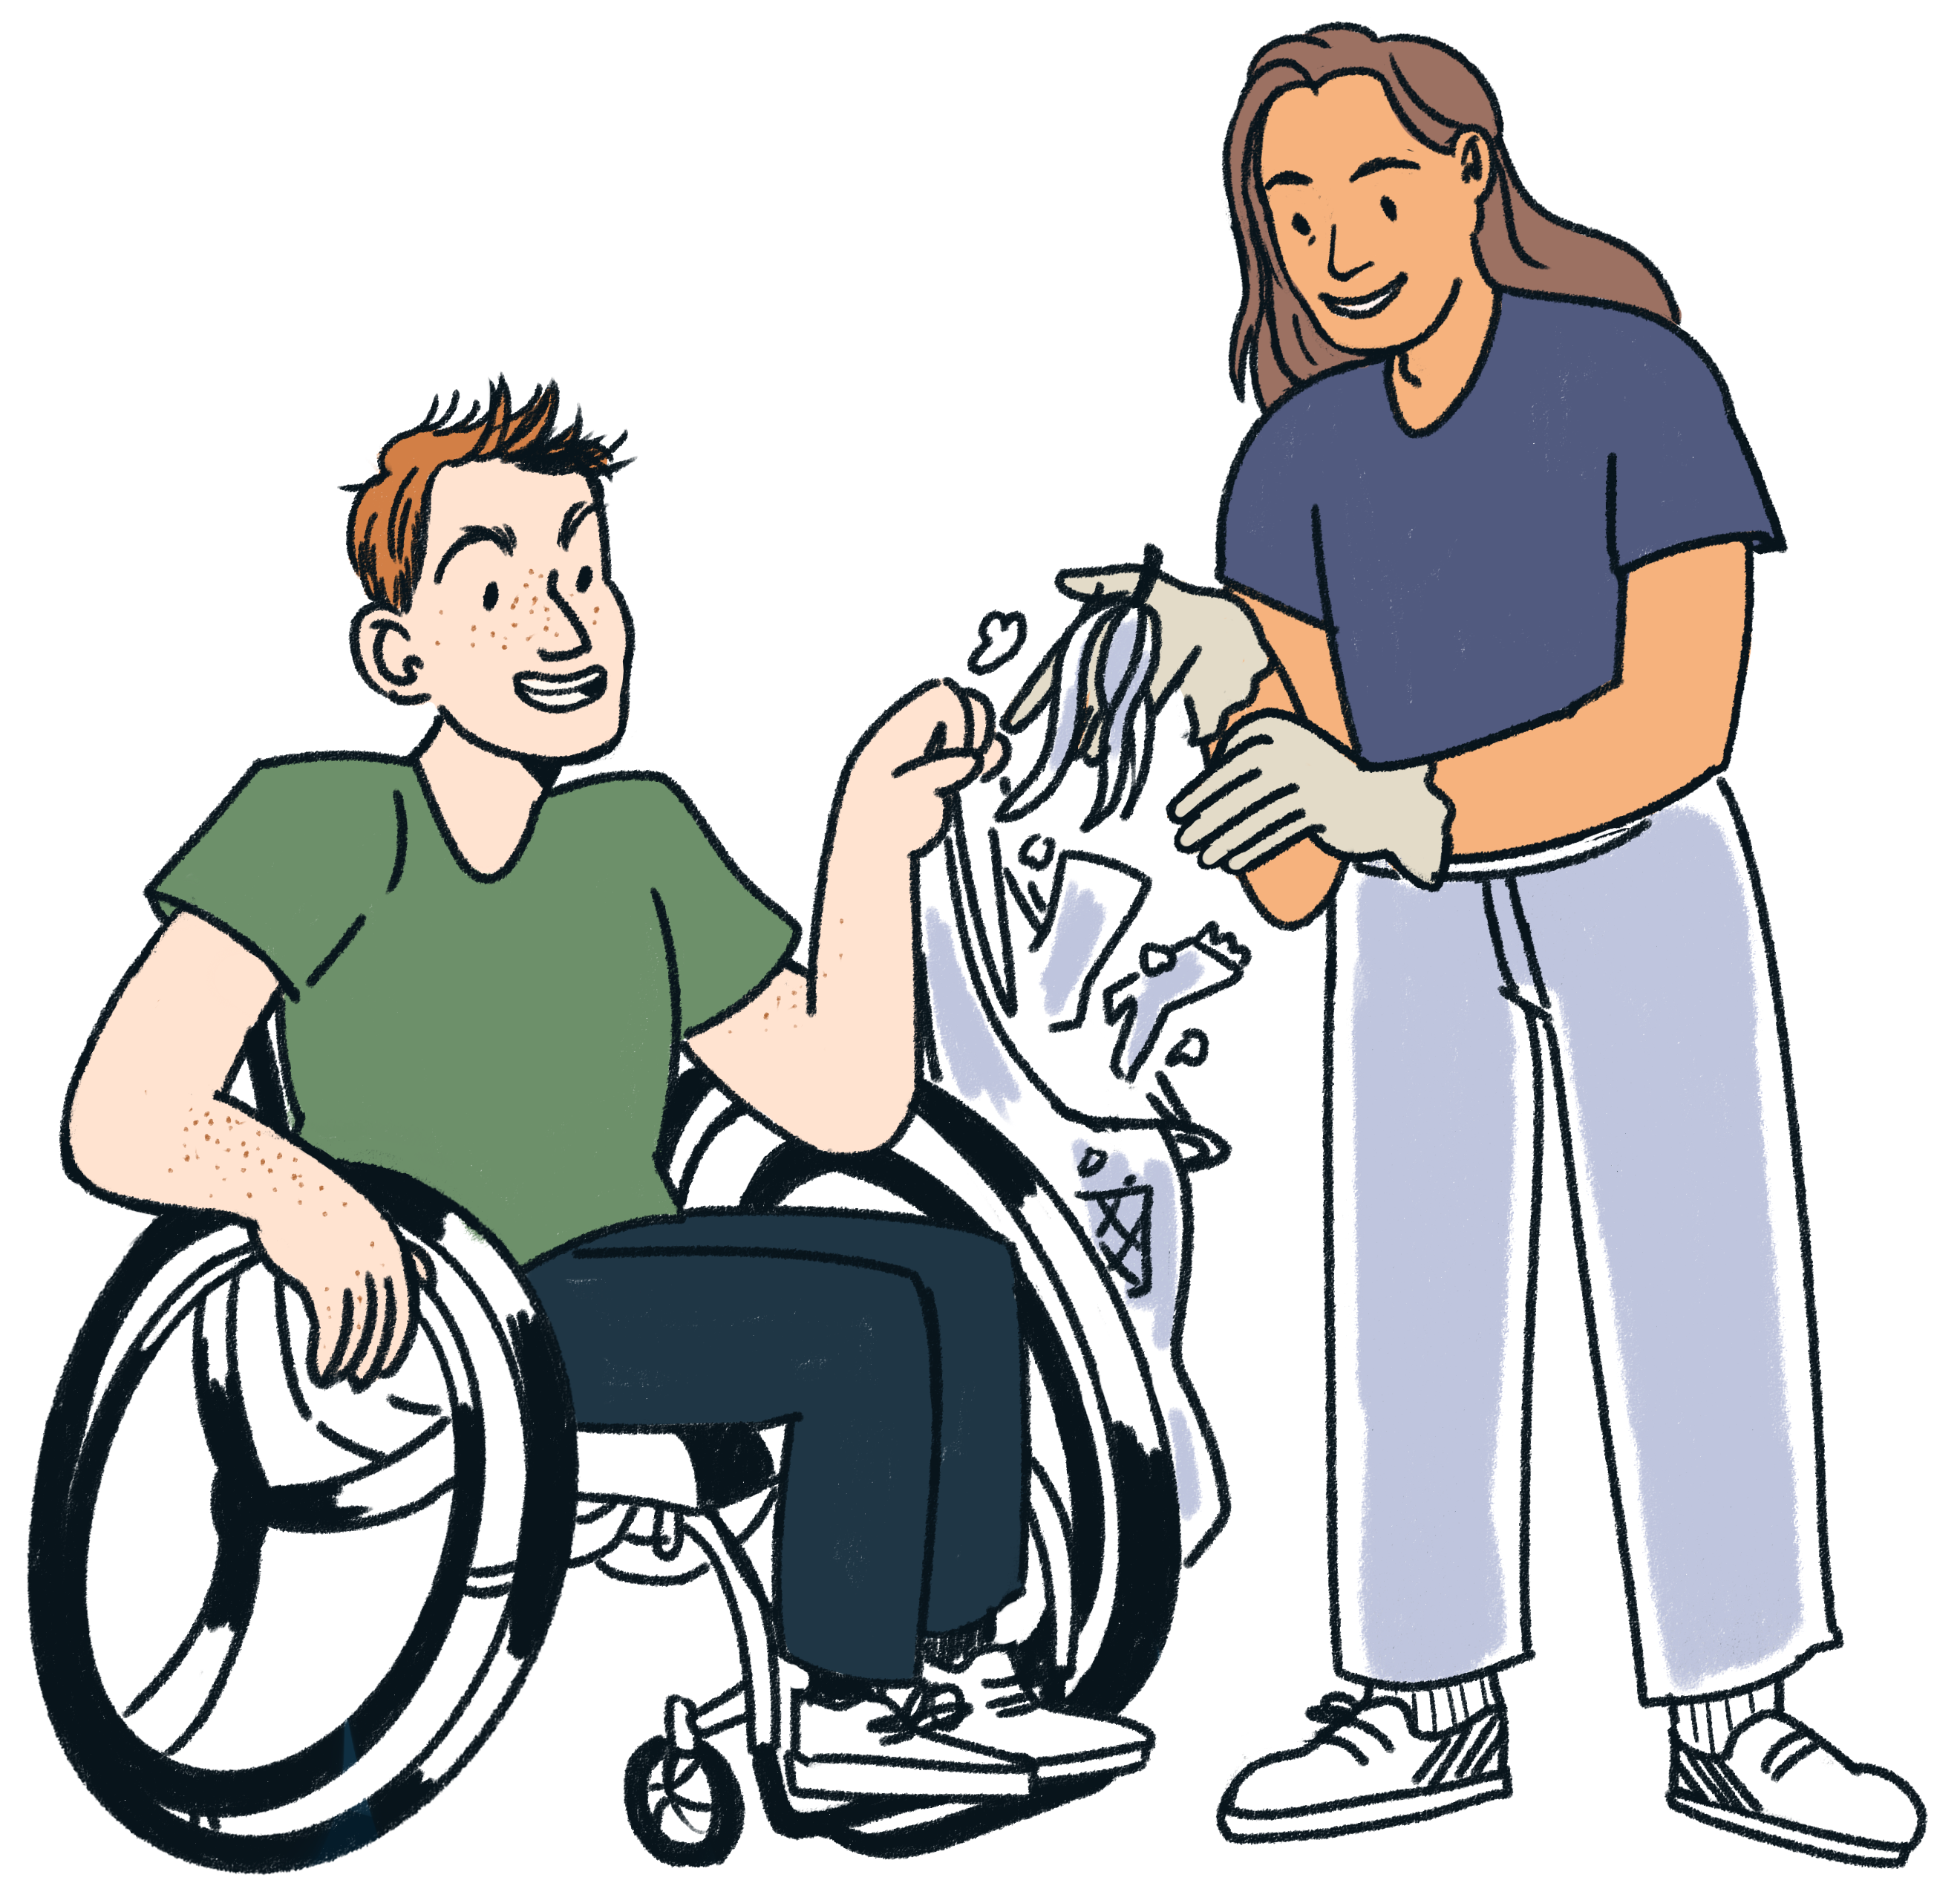 Illustrasjon av en jente som putter søppel i en pose som en gutt i rullestol holder.